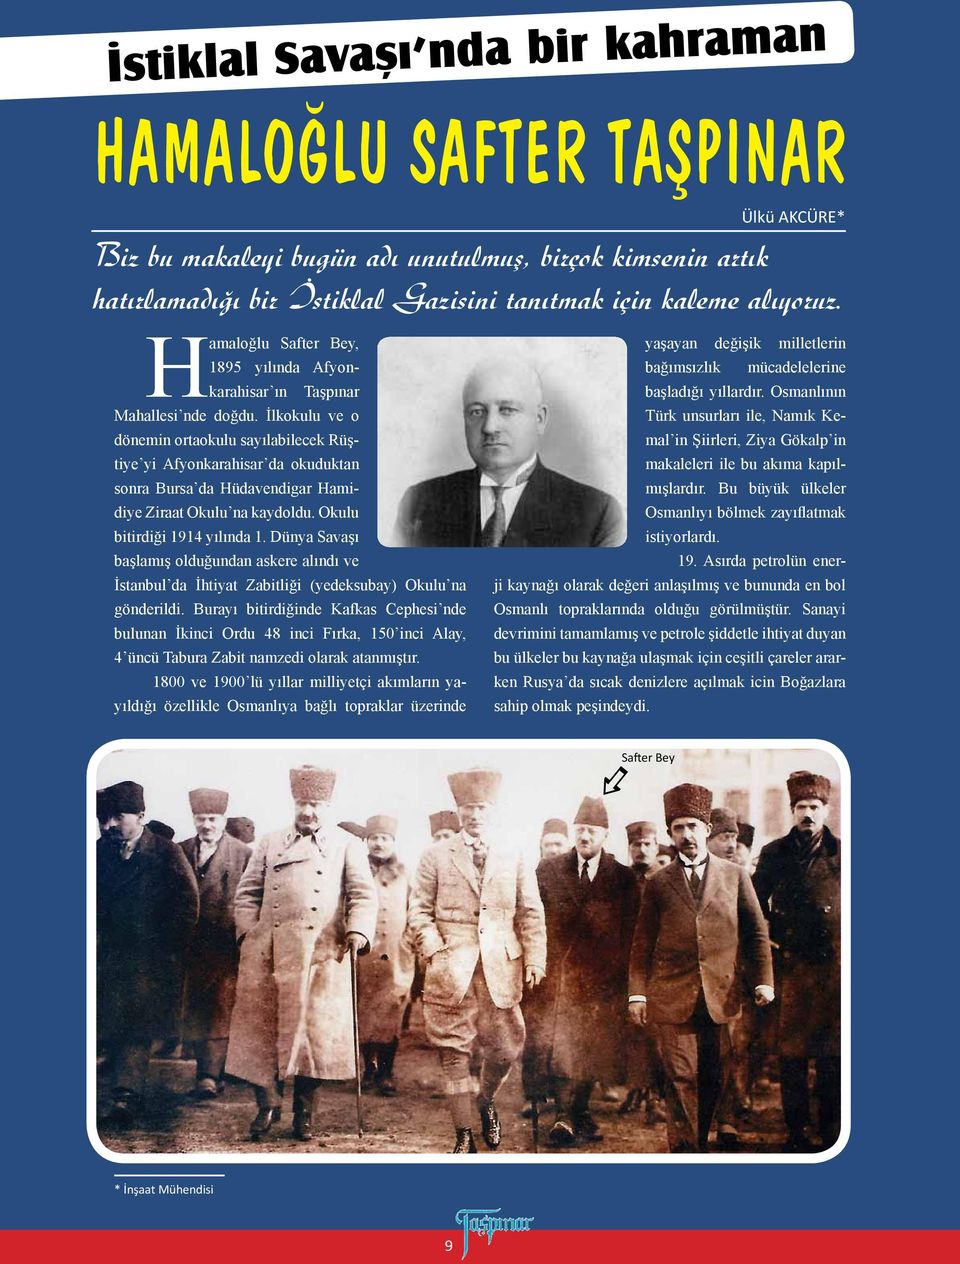 İlkokulu ve o dönemin ortaokulu sayılabilecek Rüştiye yi Afyonkarahisar da okuduktan sonra Bursa da Hüdavendigar Hamidiye Ziraat Okulu na kaydoldu. Okulu bitirdiği 1914 yılında 1.